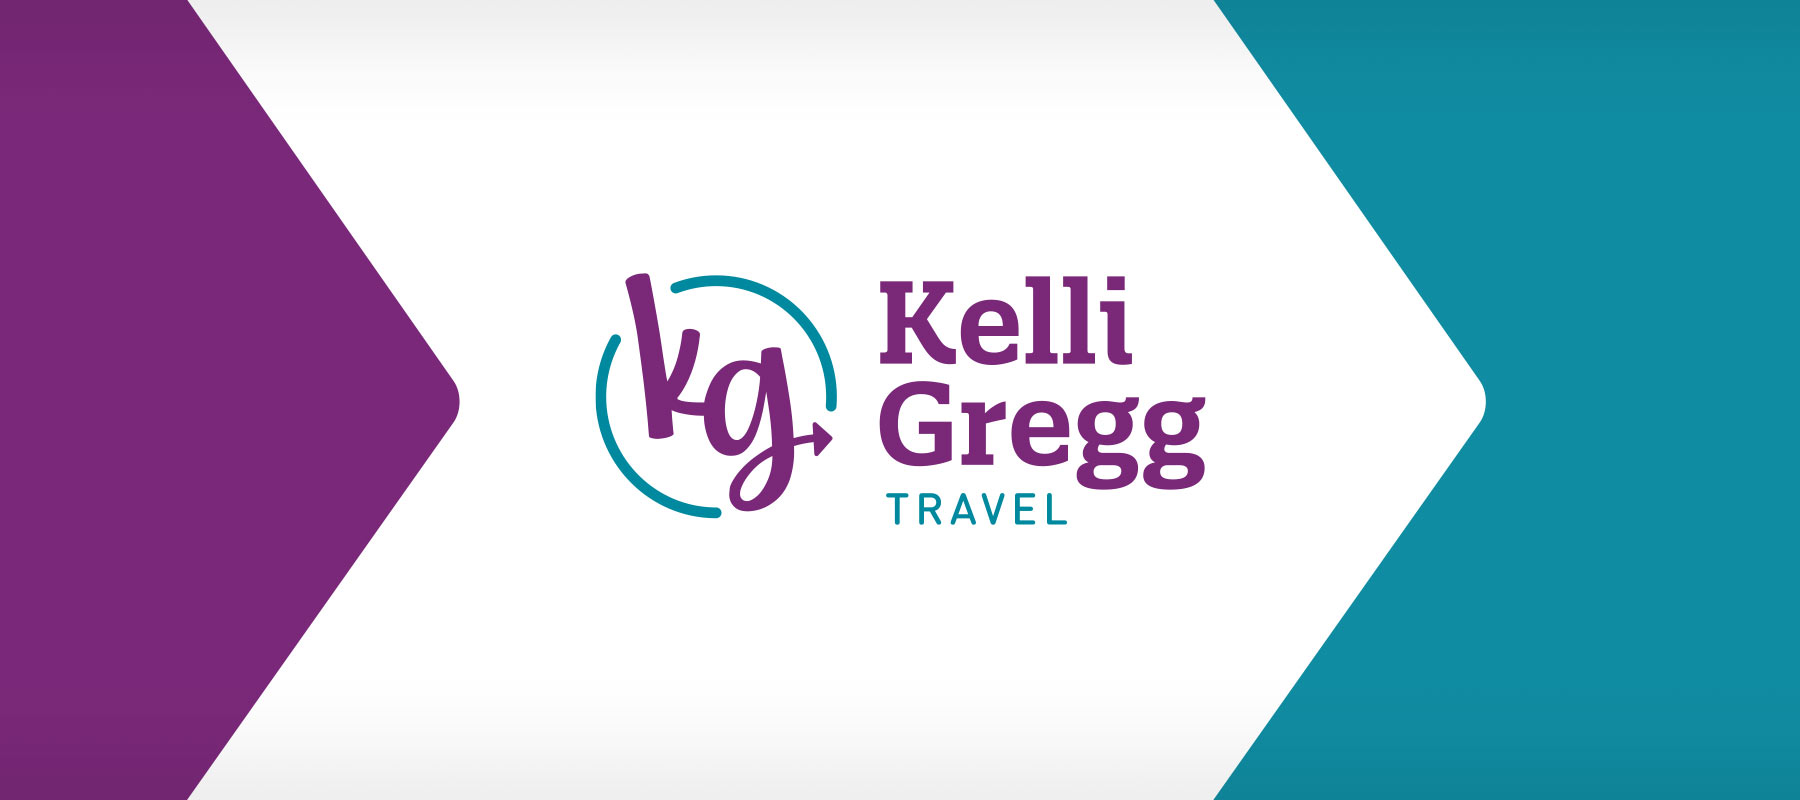 Kelli Gregg Travel logo design branding brand guidelines